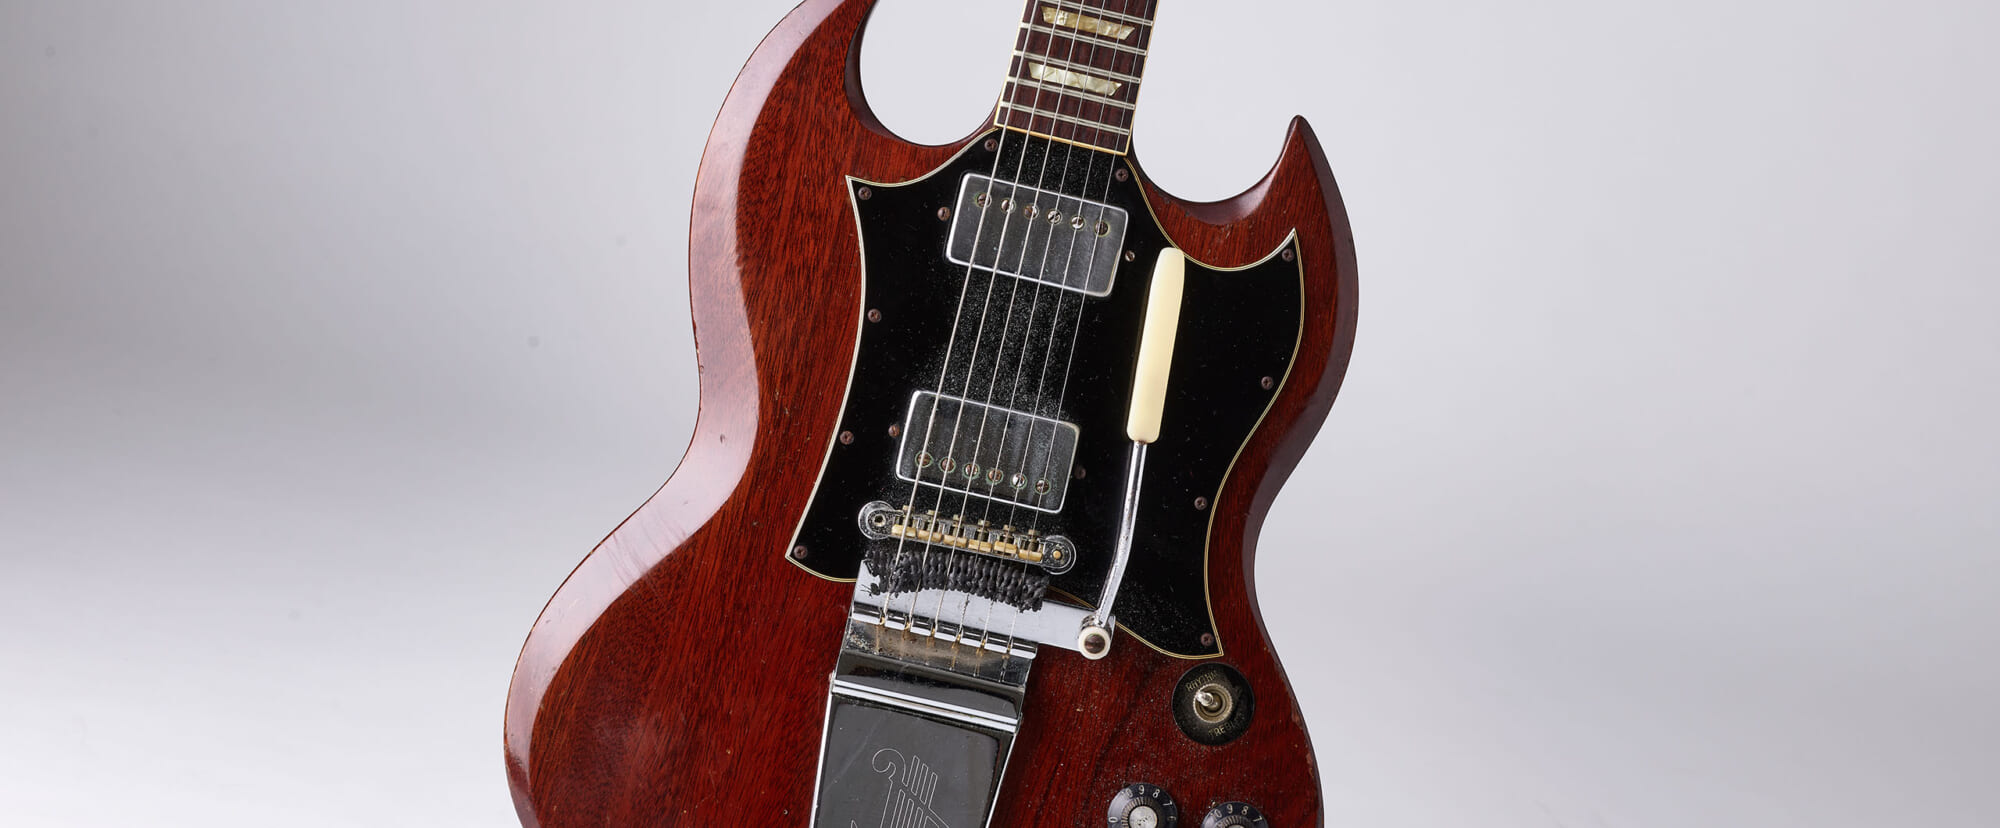 坂本慎太郎の愛器〜1971 Gibson SG Standard ゆらゆら帝国時代からの絶対的メイン